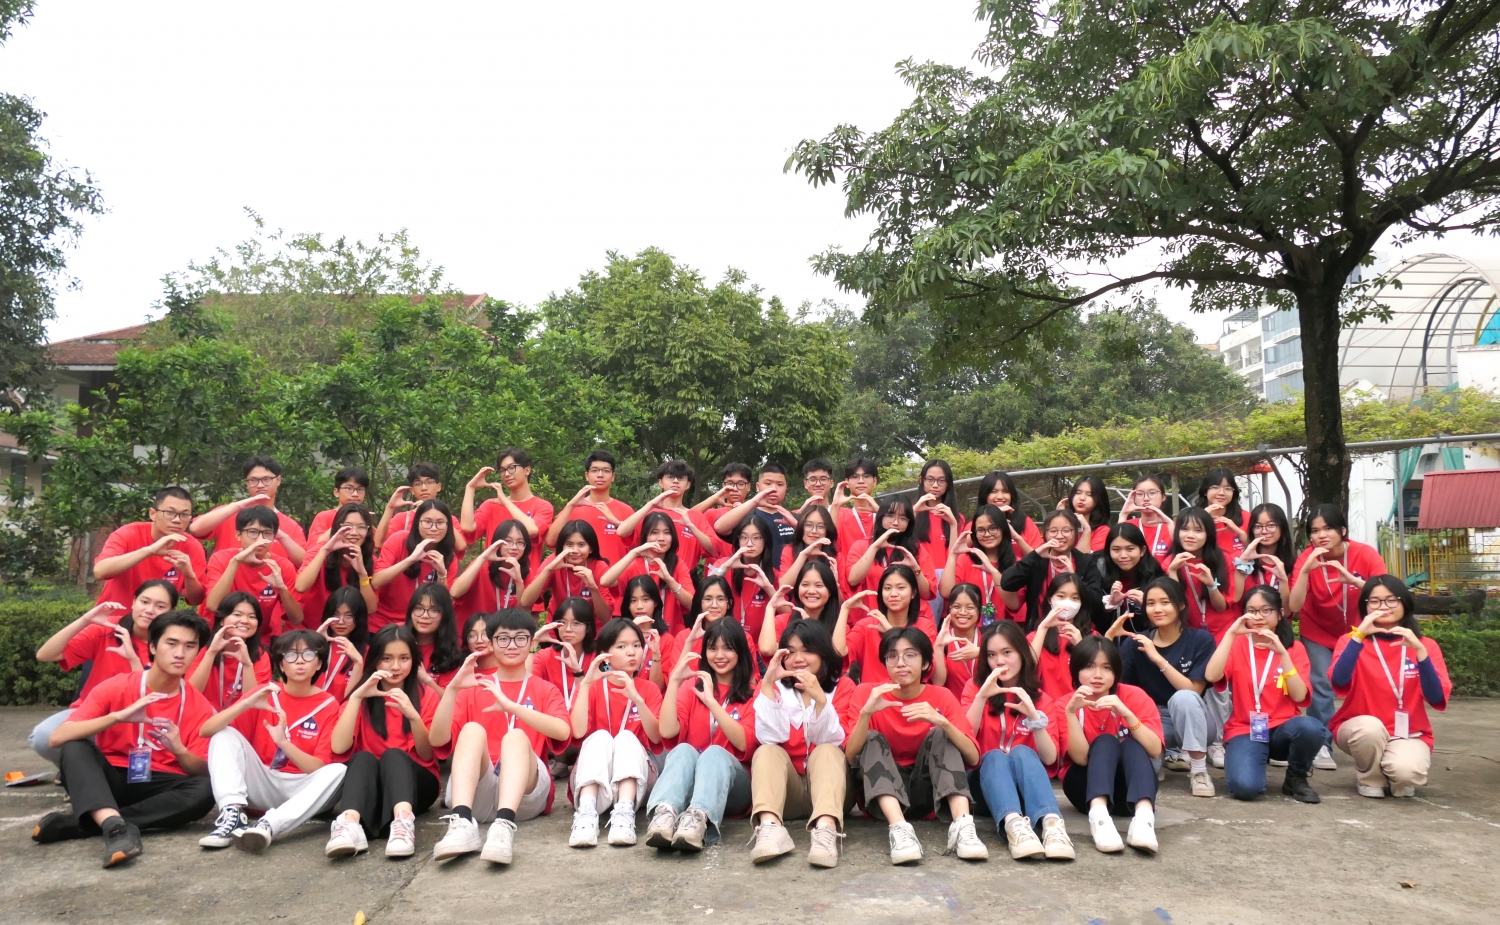 Scribbles’ Tour 2023: Dự án thiện nguyện ý nghĩa của học sinh THPT tại Hà Nội